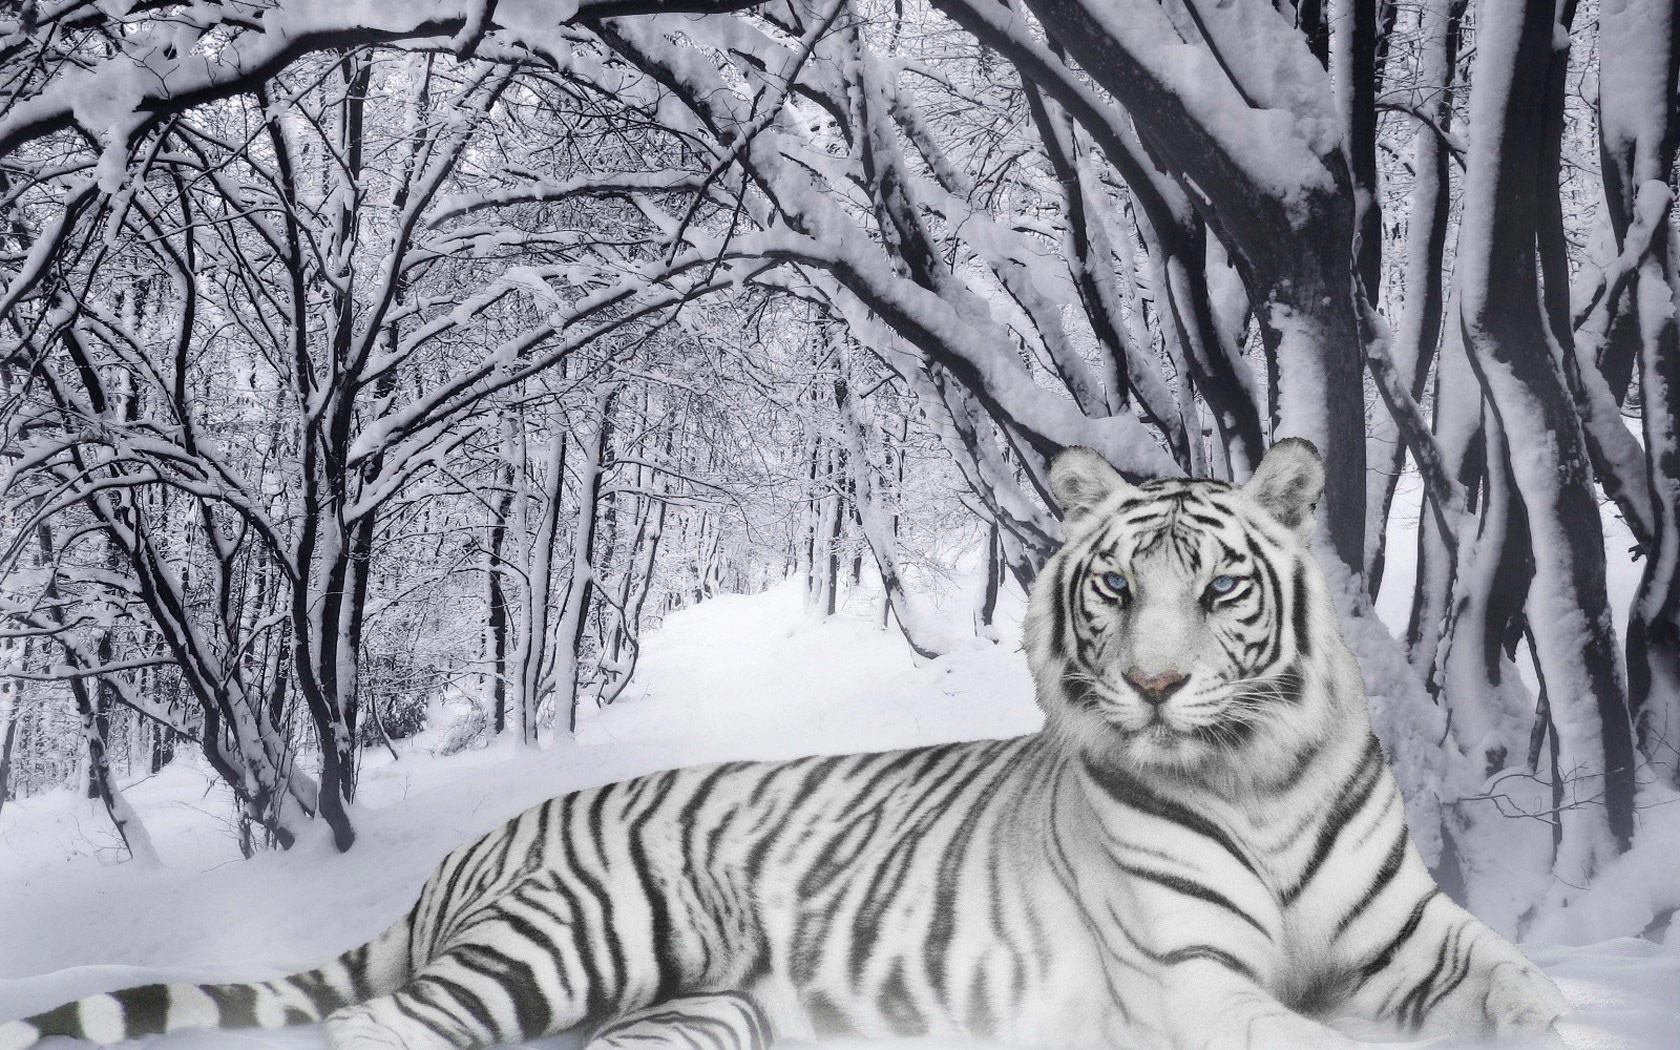 FunMozar – The White Tiger